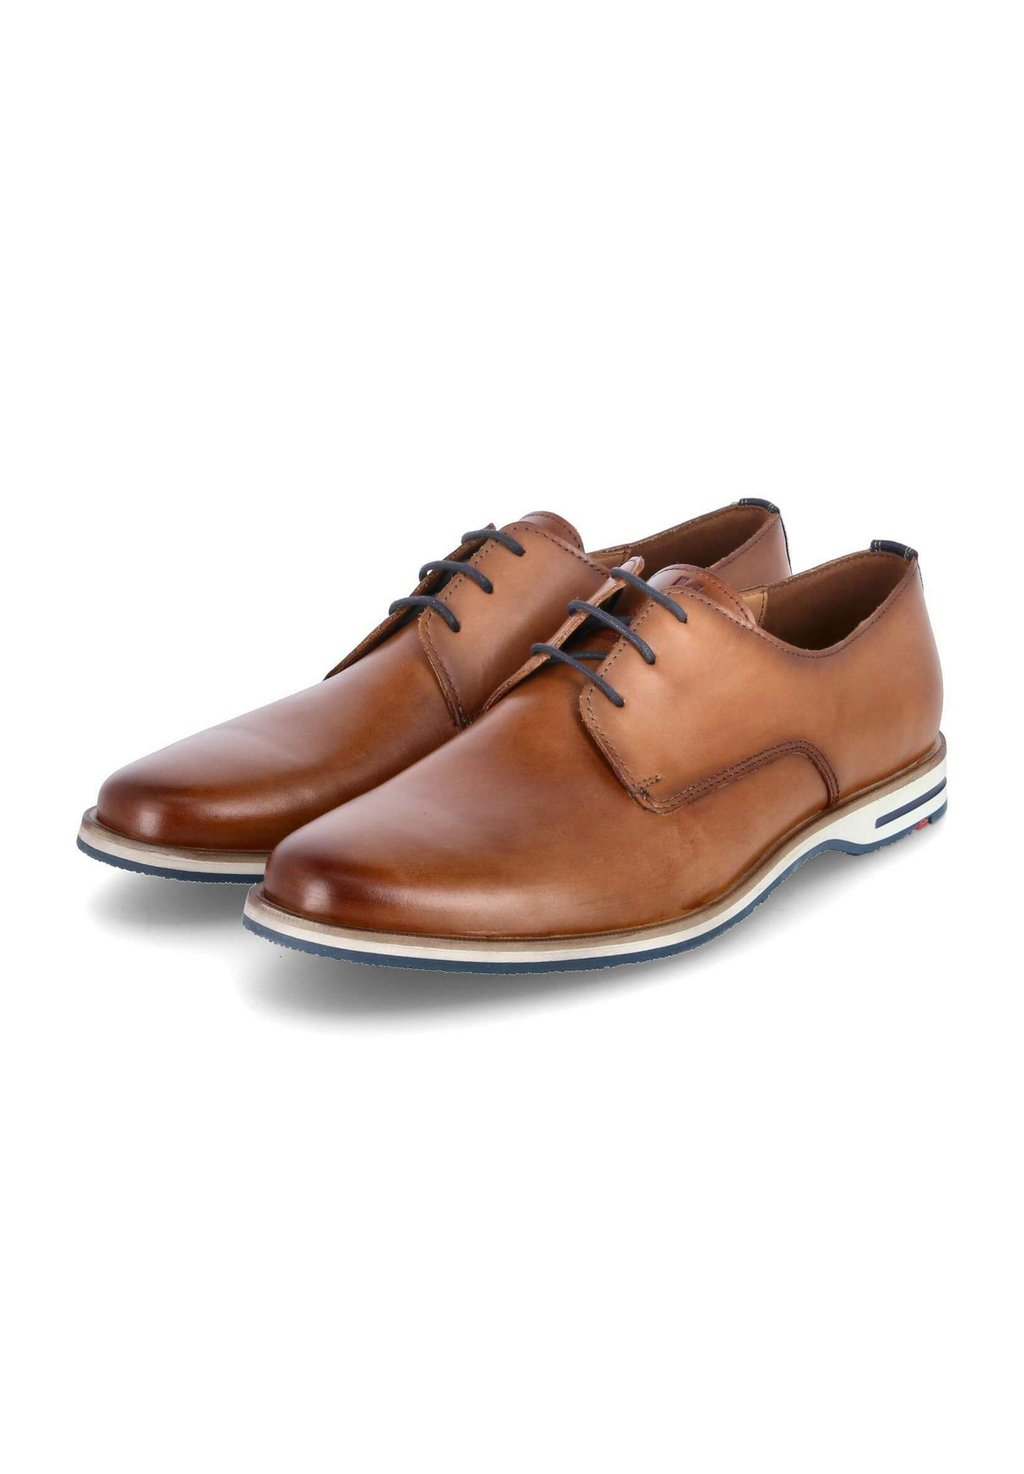 Элегантные туфли на шнуровке Dakin Lloyd, цвет braun